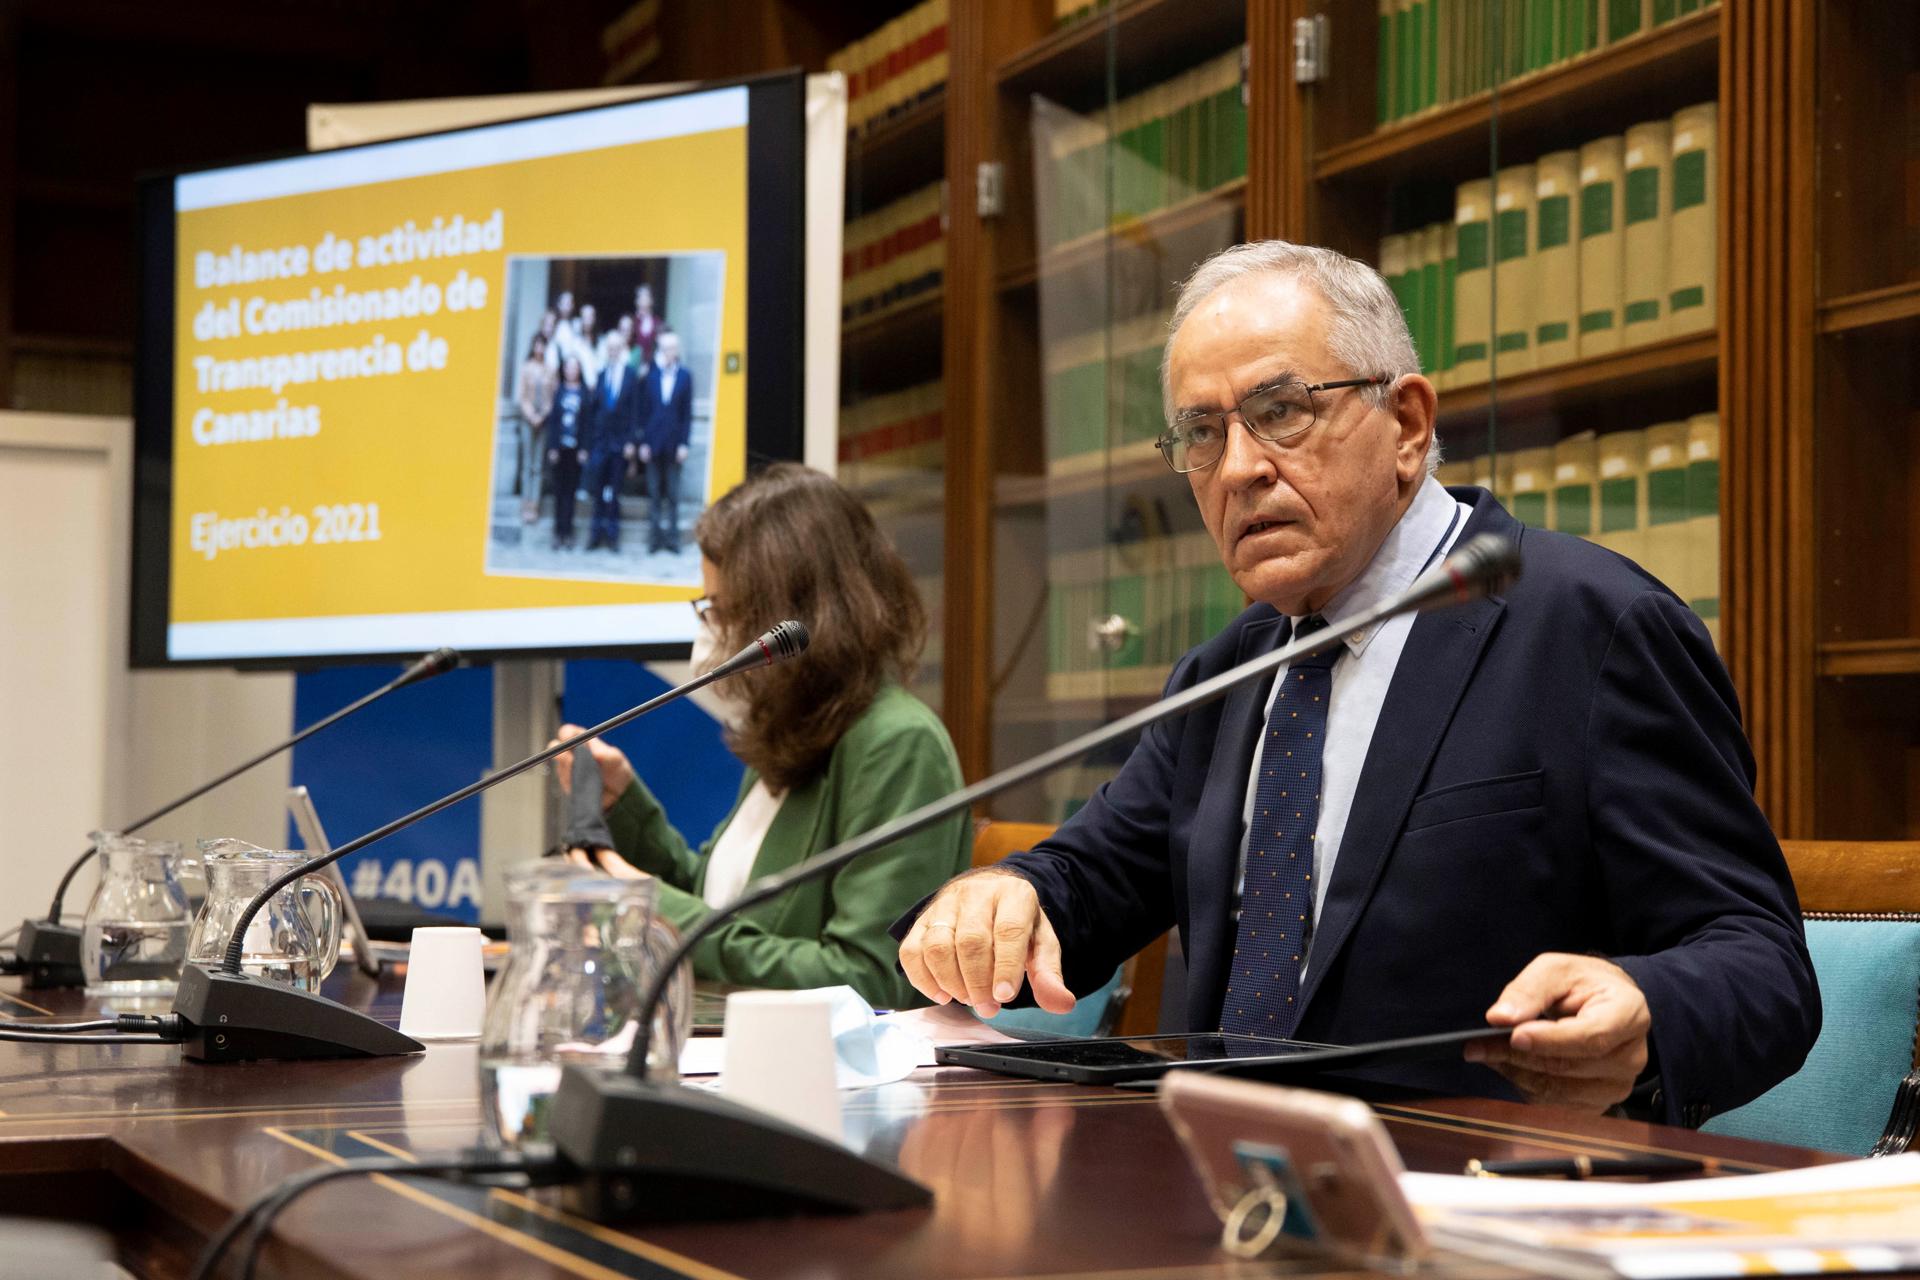 Imagen de archivo del comisionado de Transparencia de Canarias, Daniel Cerdán. EFE/Miguel Barreto